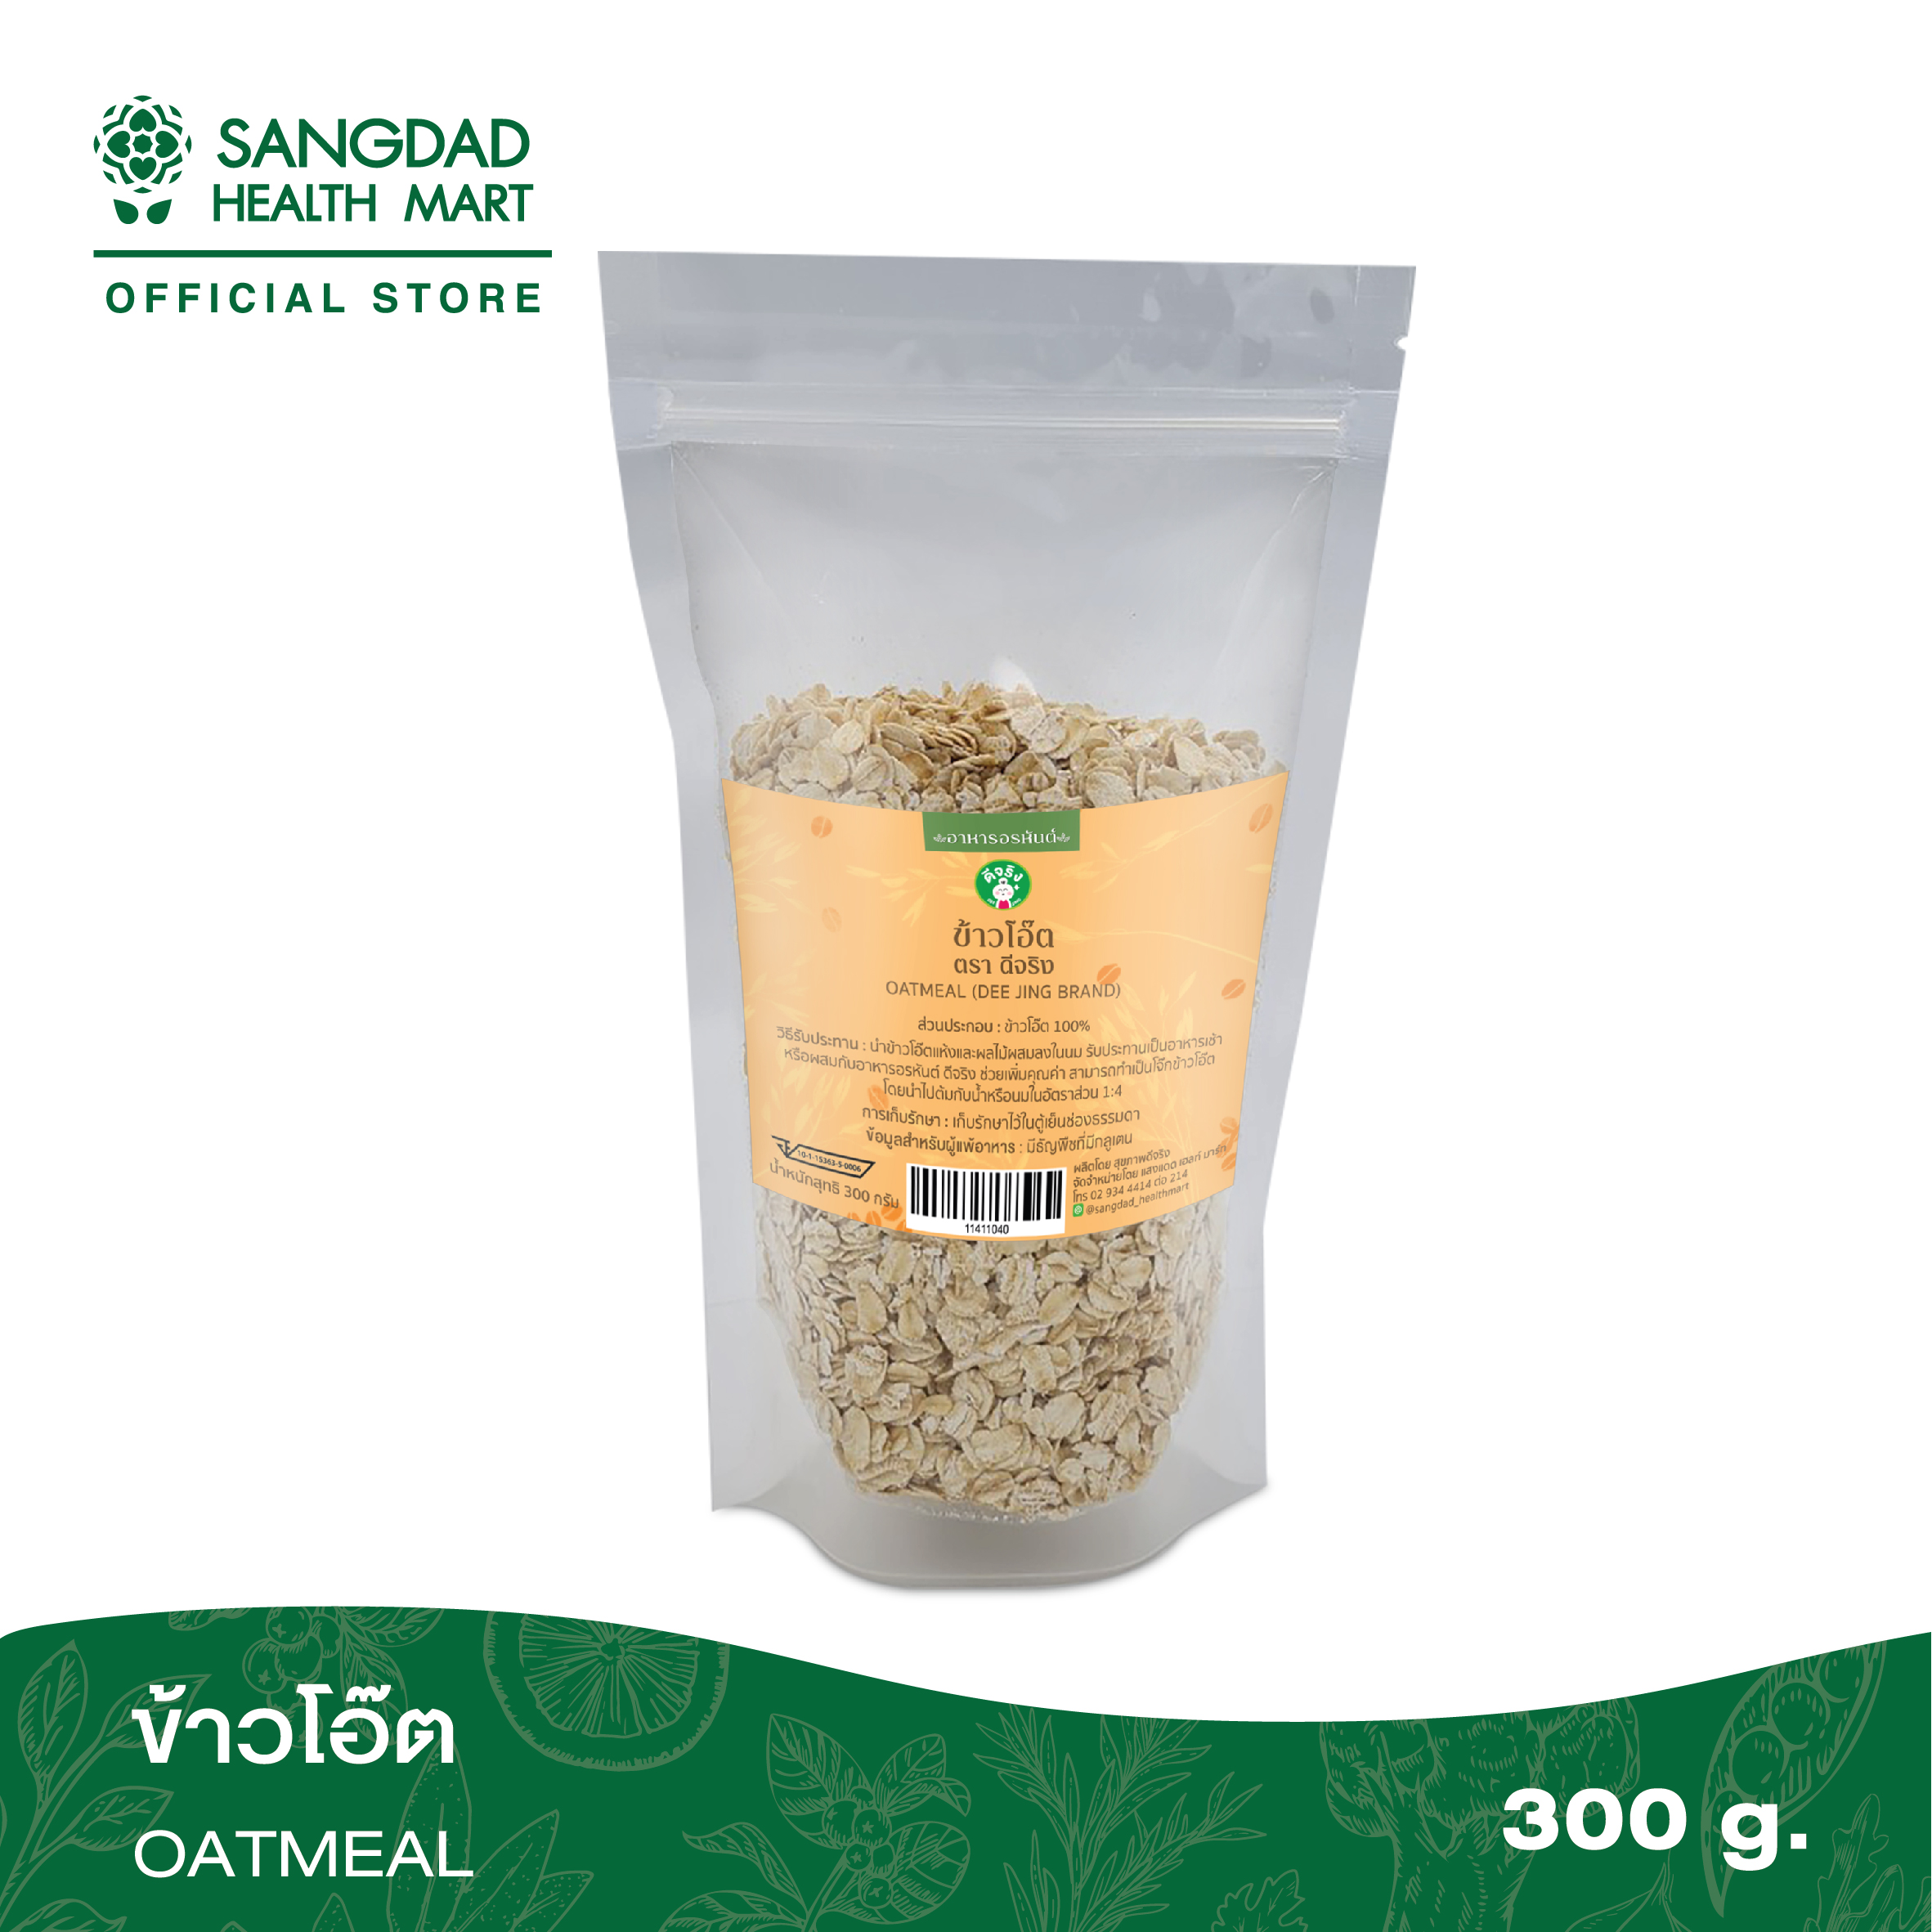 Sangdad Health Mart : ข้าวโอ๊ต (Oats) 300 กรัม (ส่วนประกอบ 1 ในอาหารอรหันต์ By:ป้านิด) By:ป้านิด|สินค้าดีจริง  #สุขภาพดีมีไว้แบ่งปัน